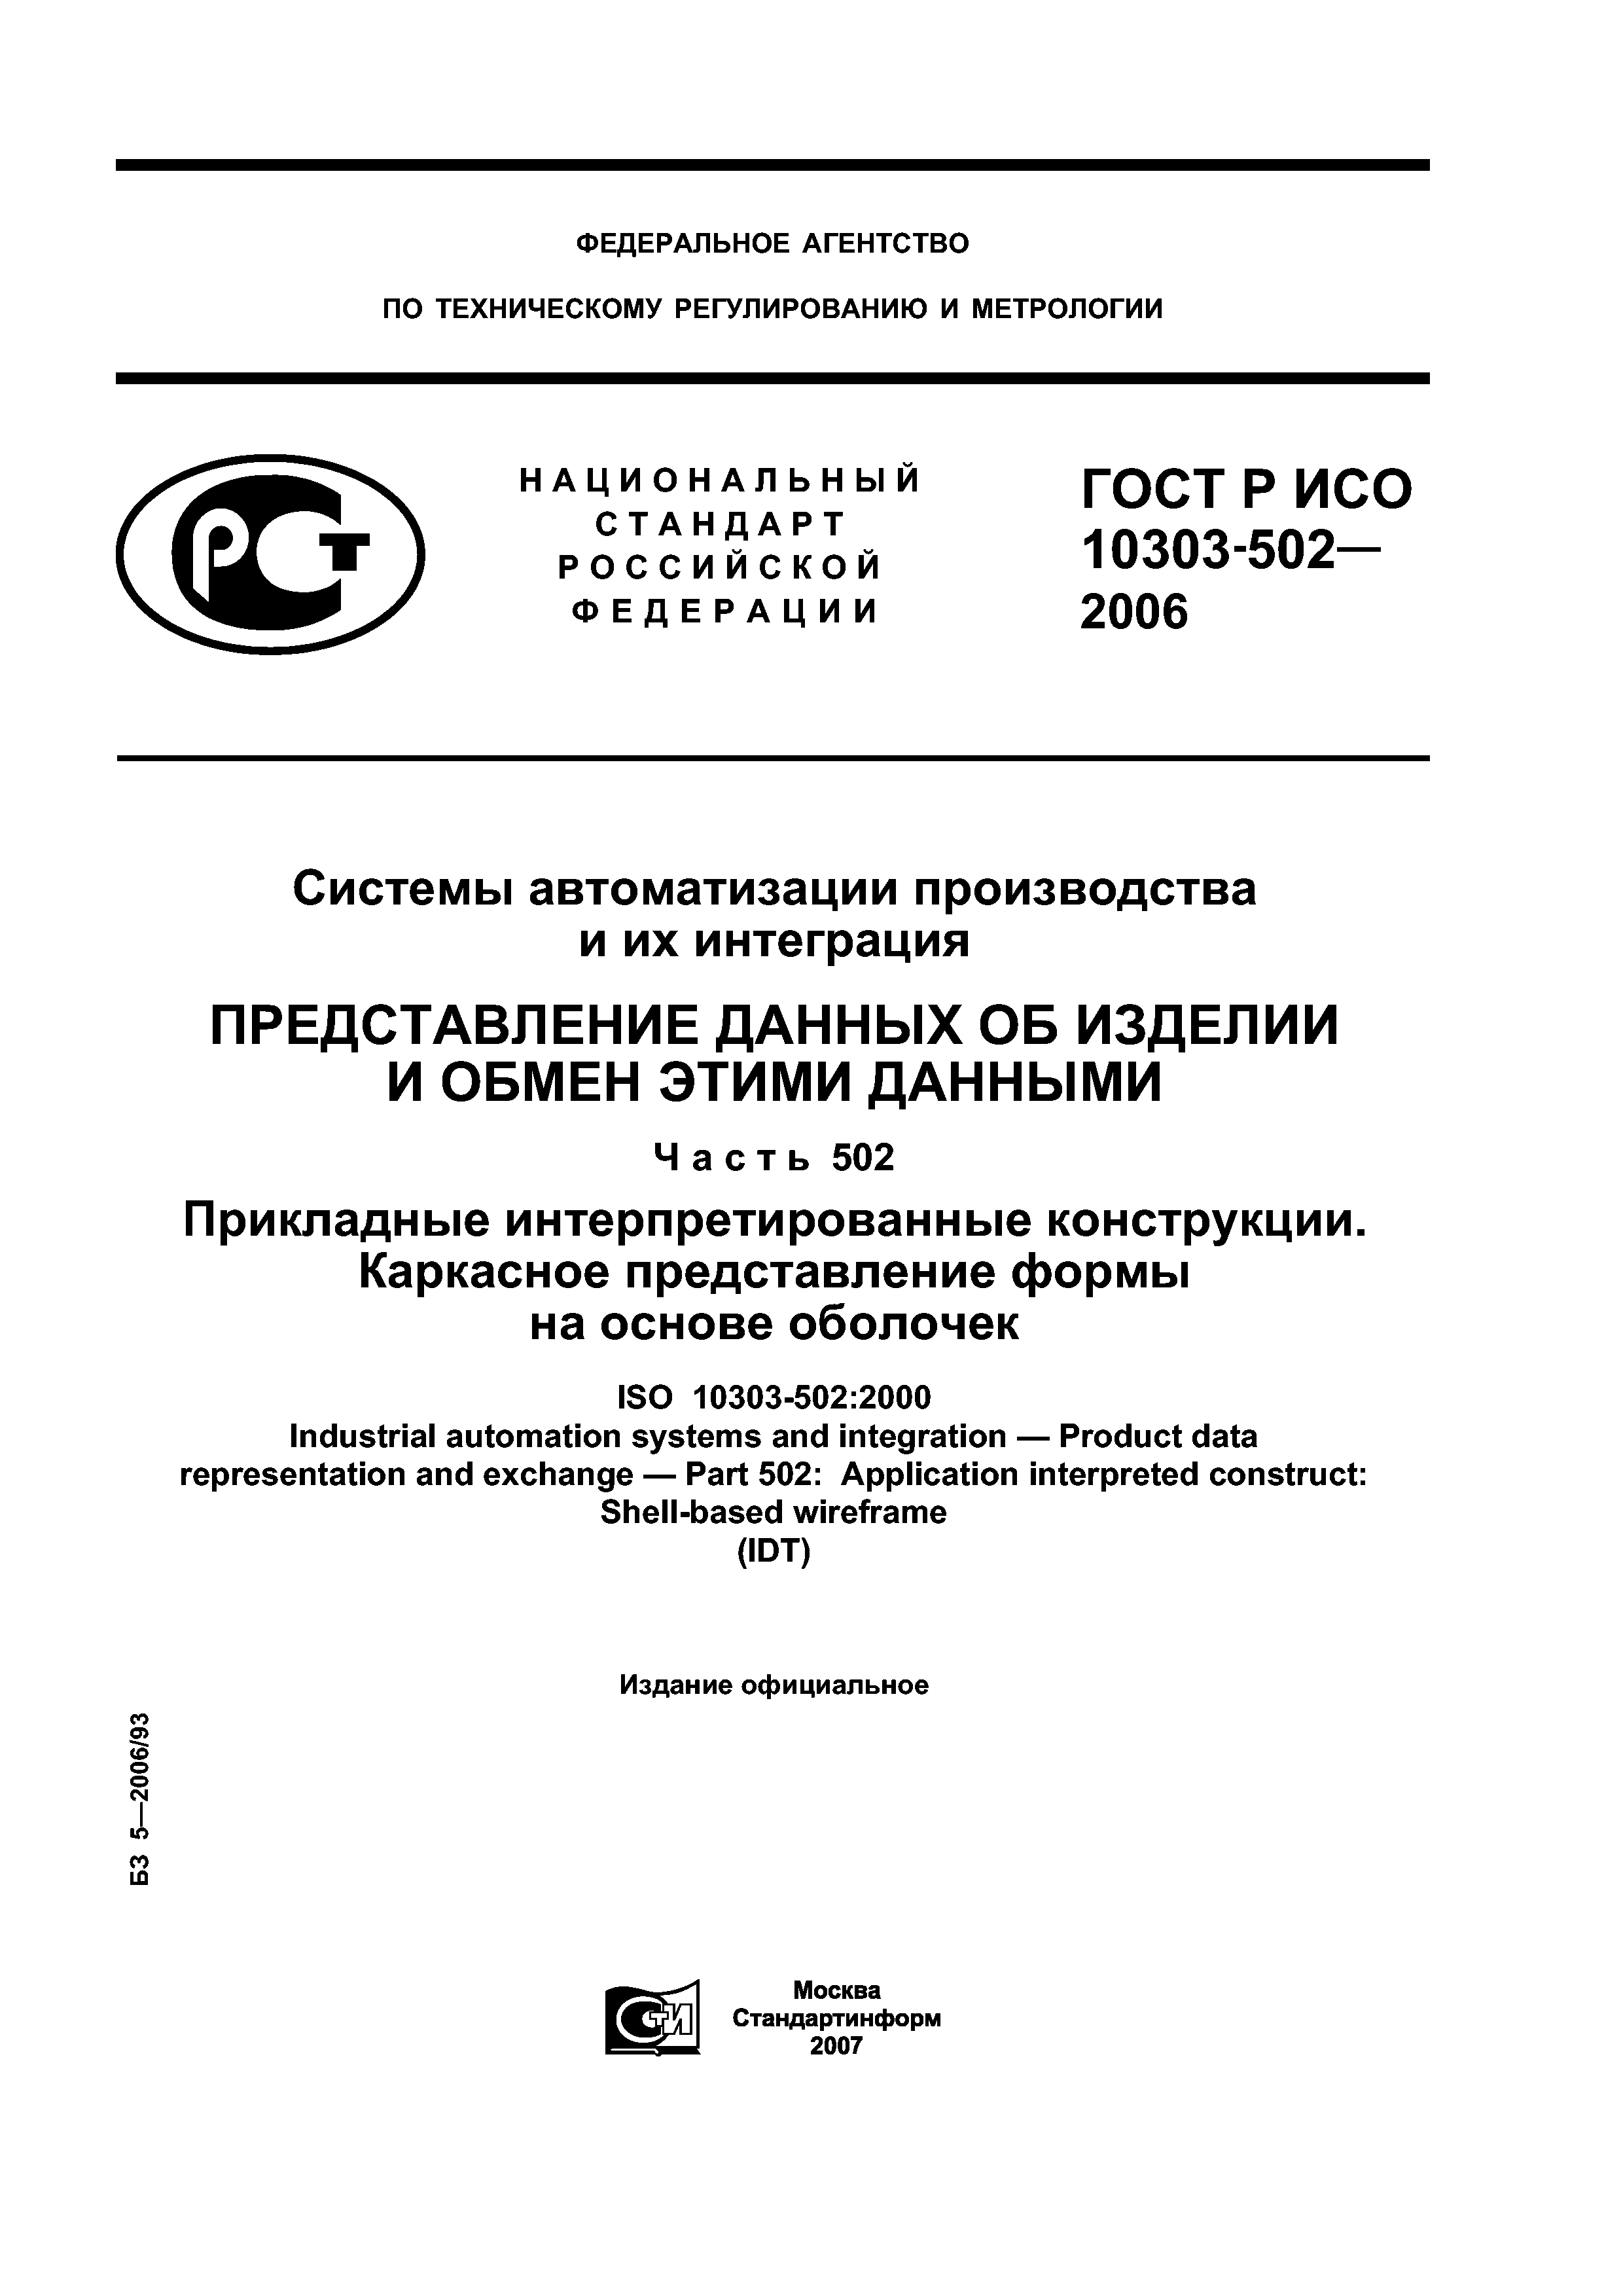 ГОСТ Р ИСО 10303-502-2006